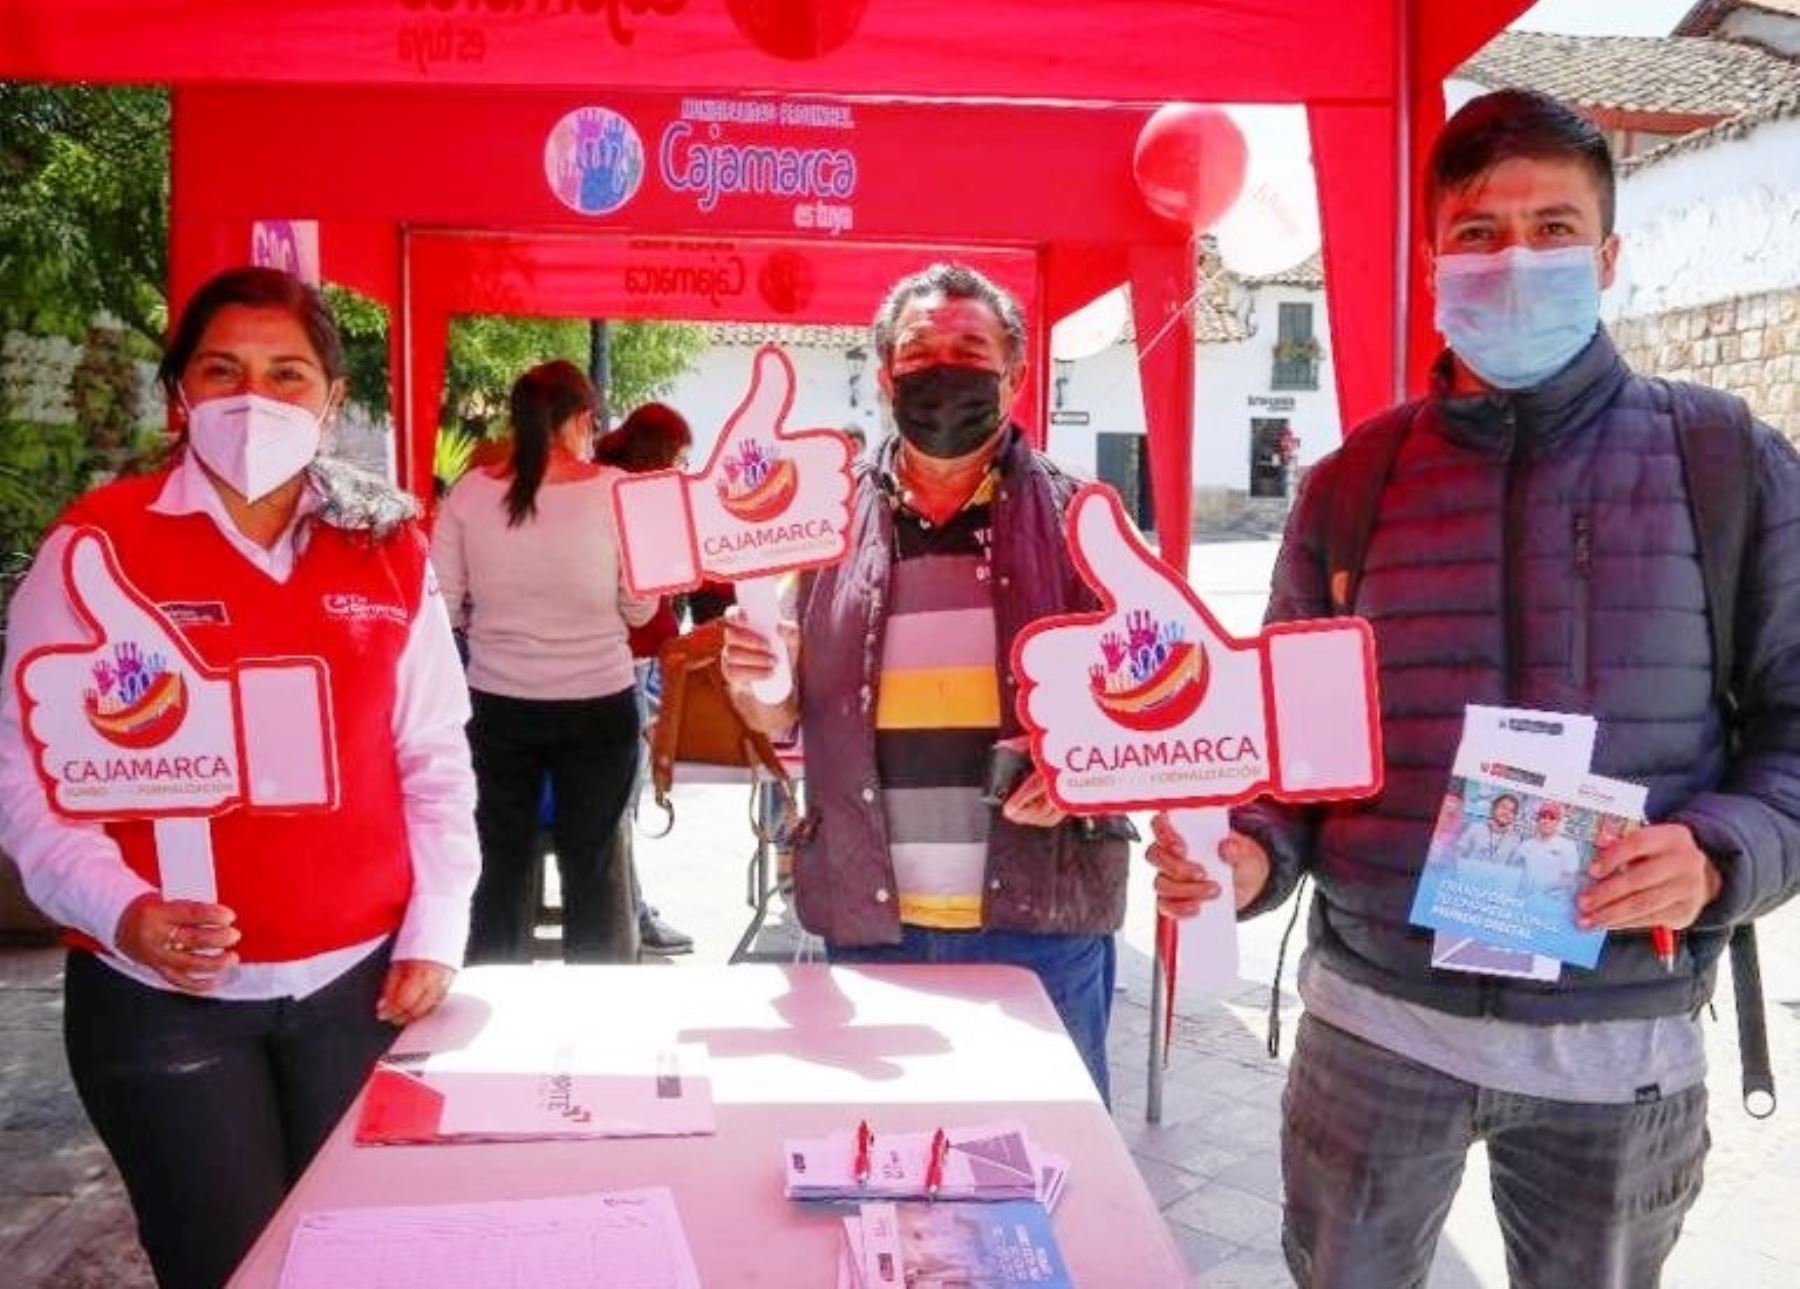 La municipalidad de Cajamarca anunció que otorgará facilidades para formalizar 650 negocios este año. Foto: ANDINA/difusión.